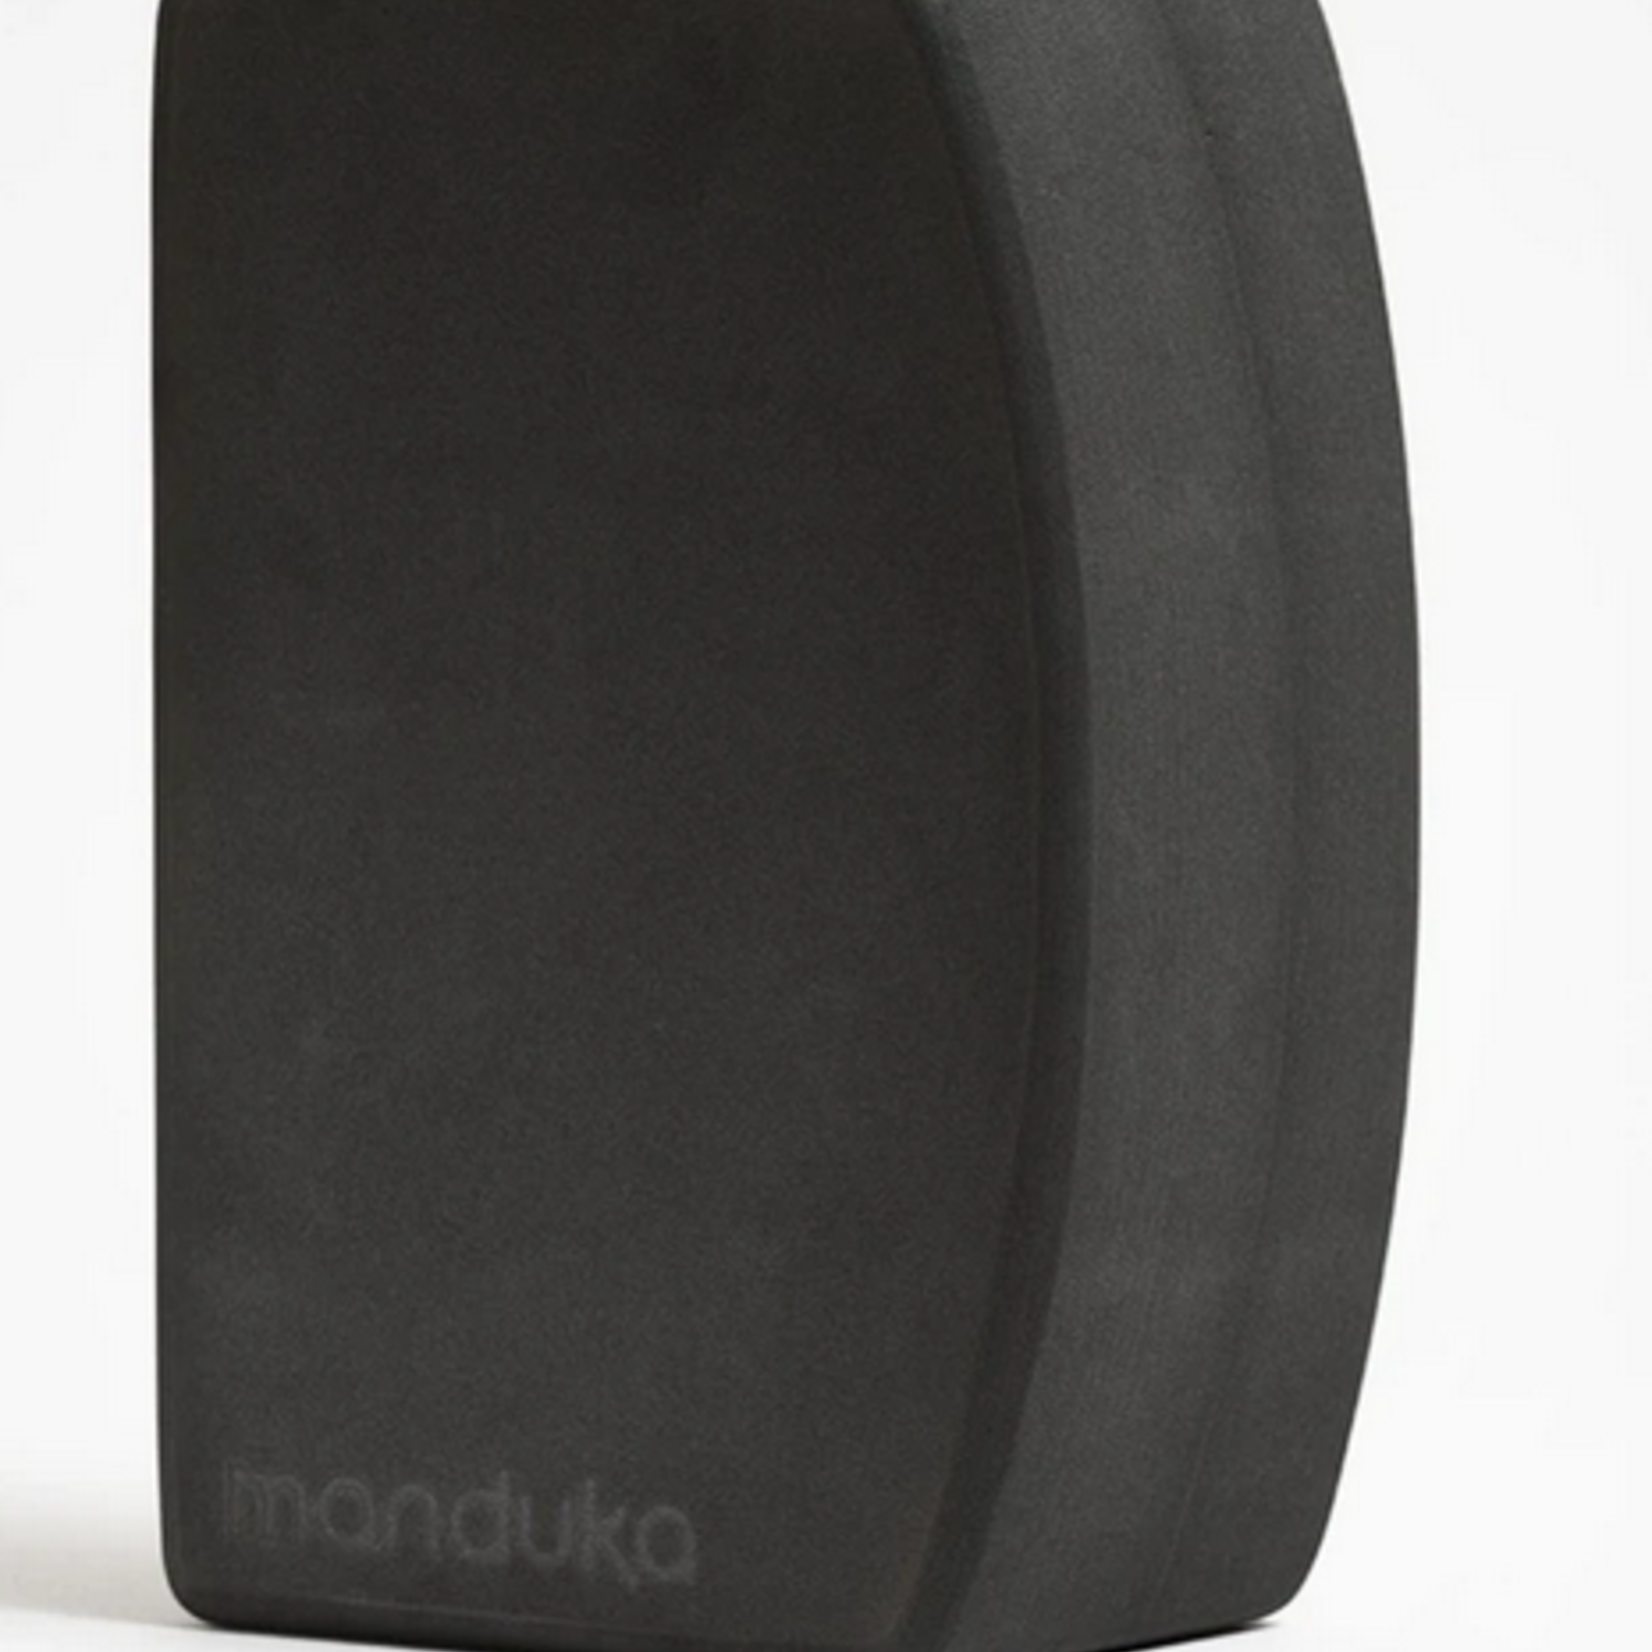 Manduka Recycled Foam Yoga Blocks Review 